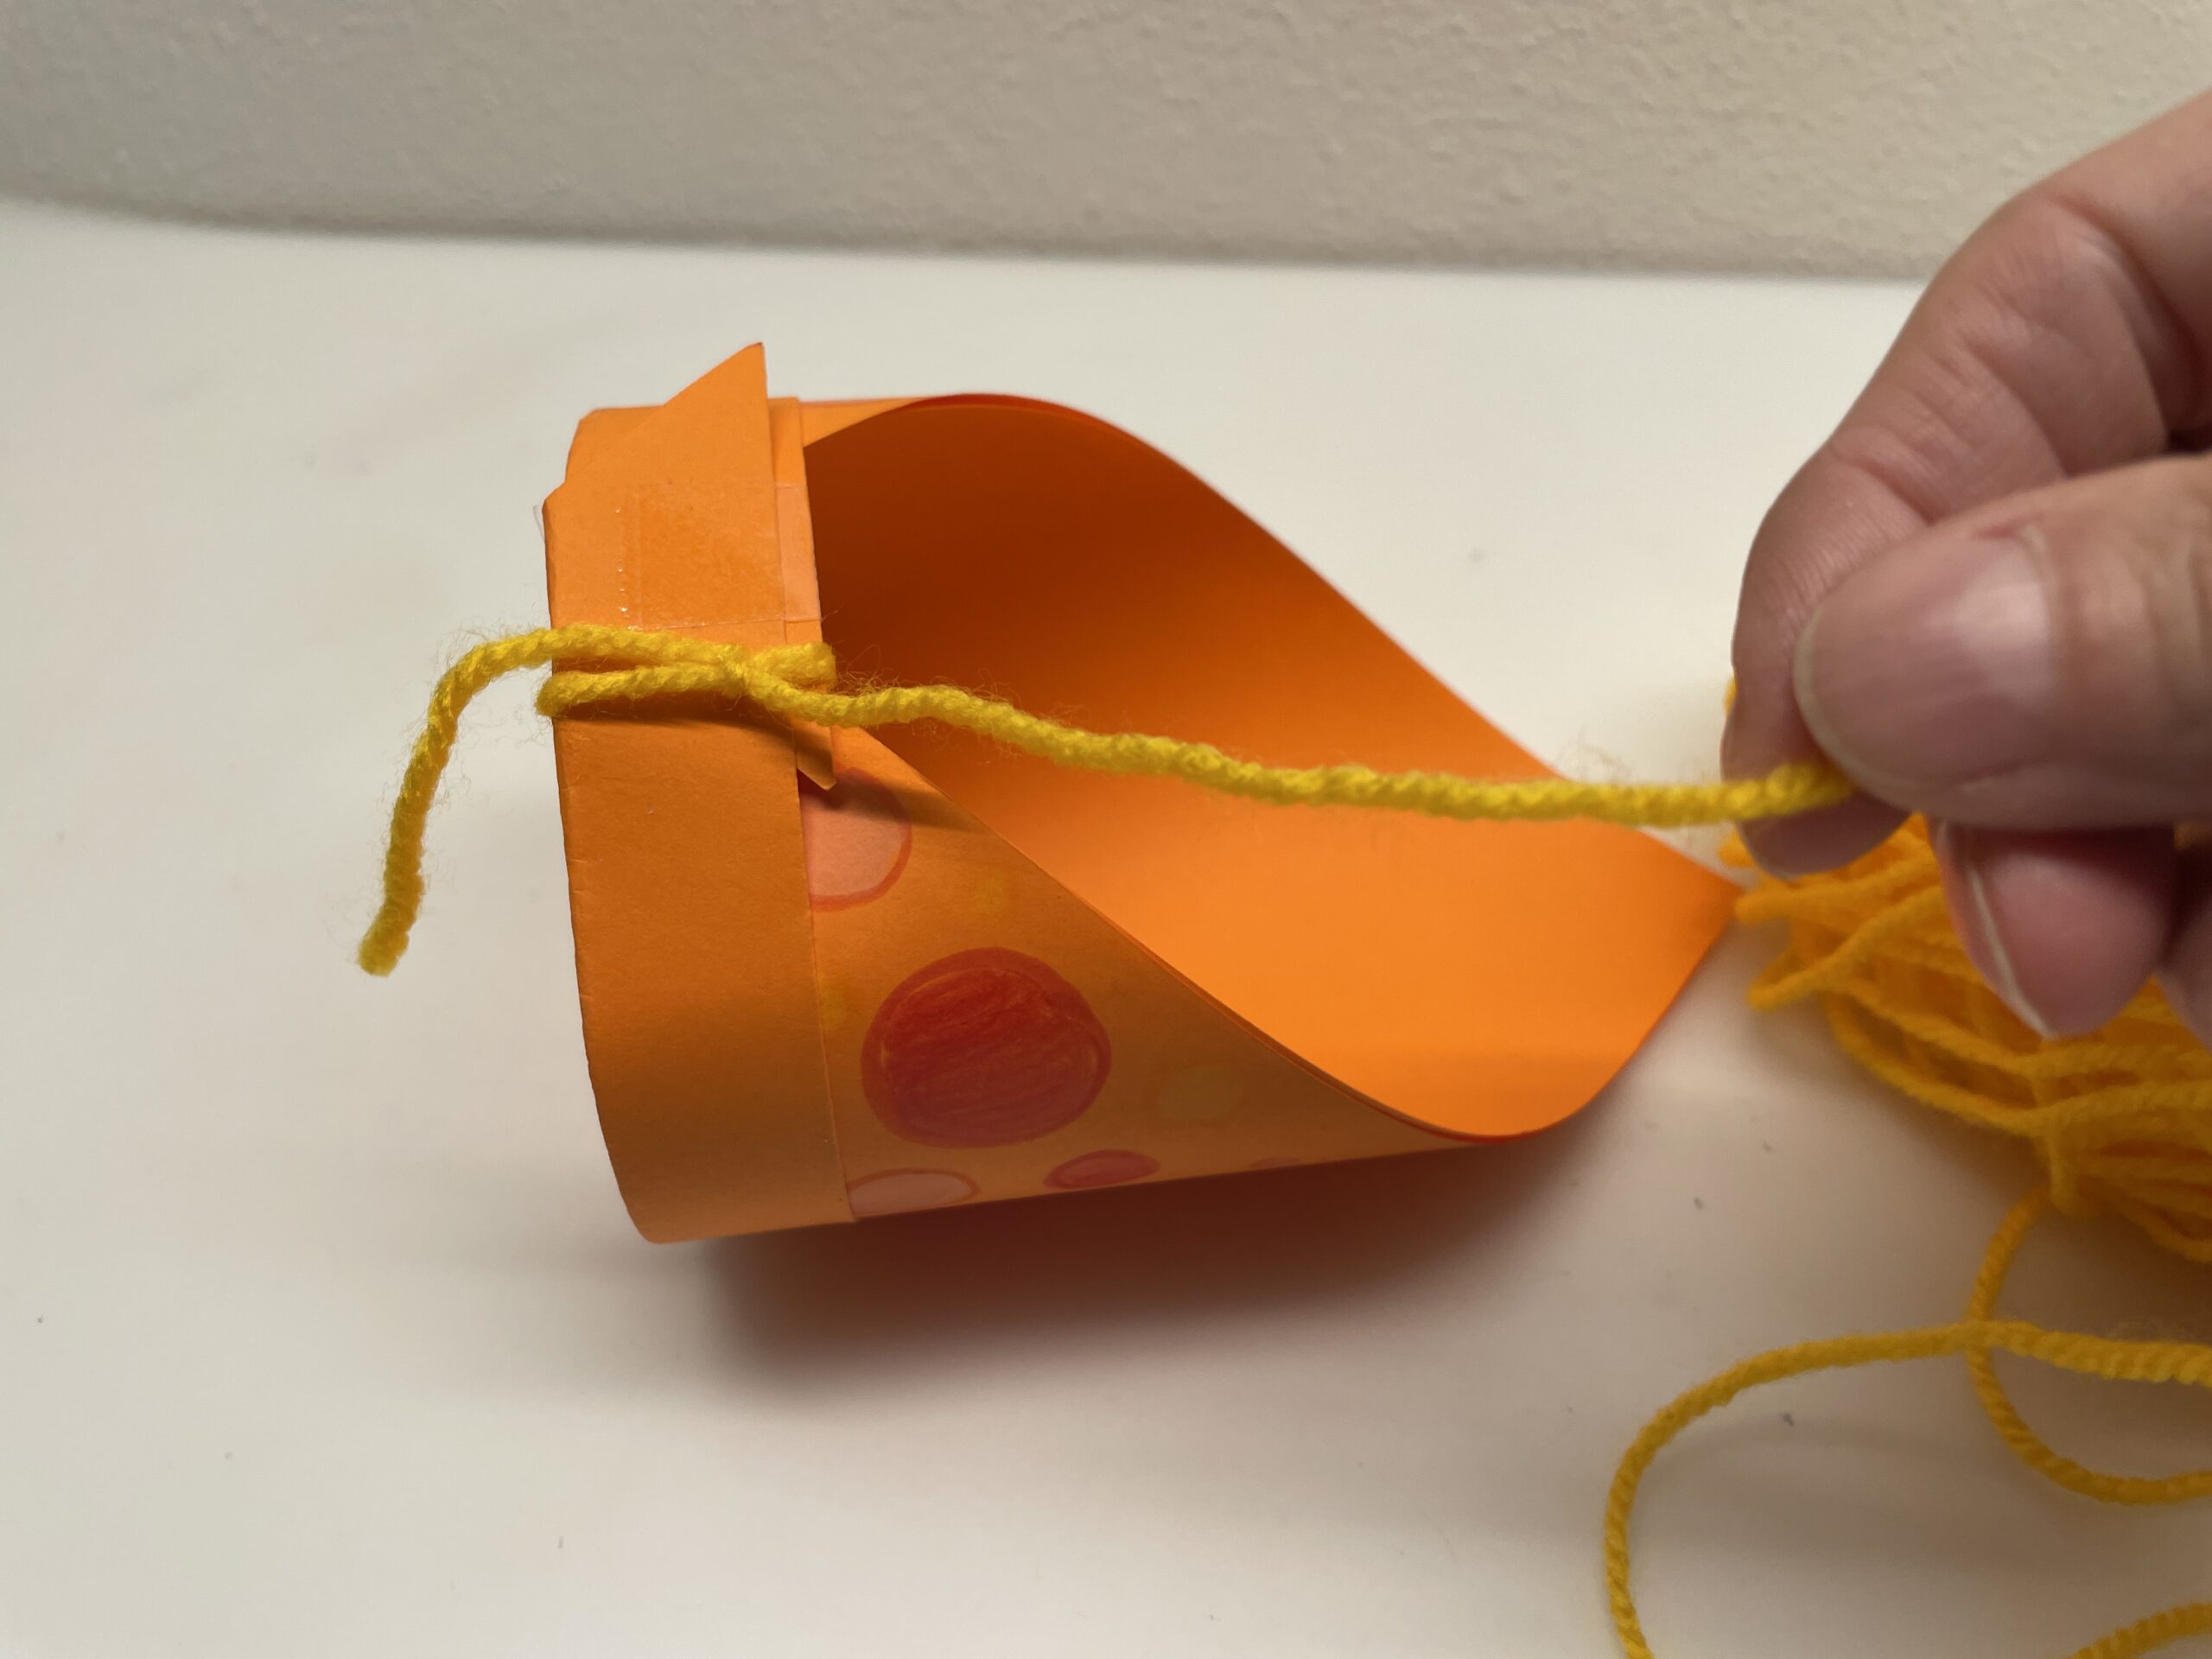 Bild zum Schritt 36 für das Bastel- und DIY-Abenteuer für Kinder: 'So zieht ihr den Knoten fest. Es entsteht ein Doppelknoten.'